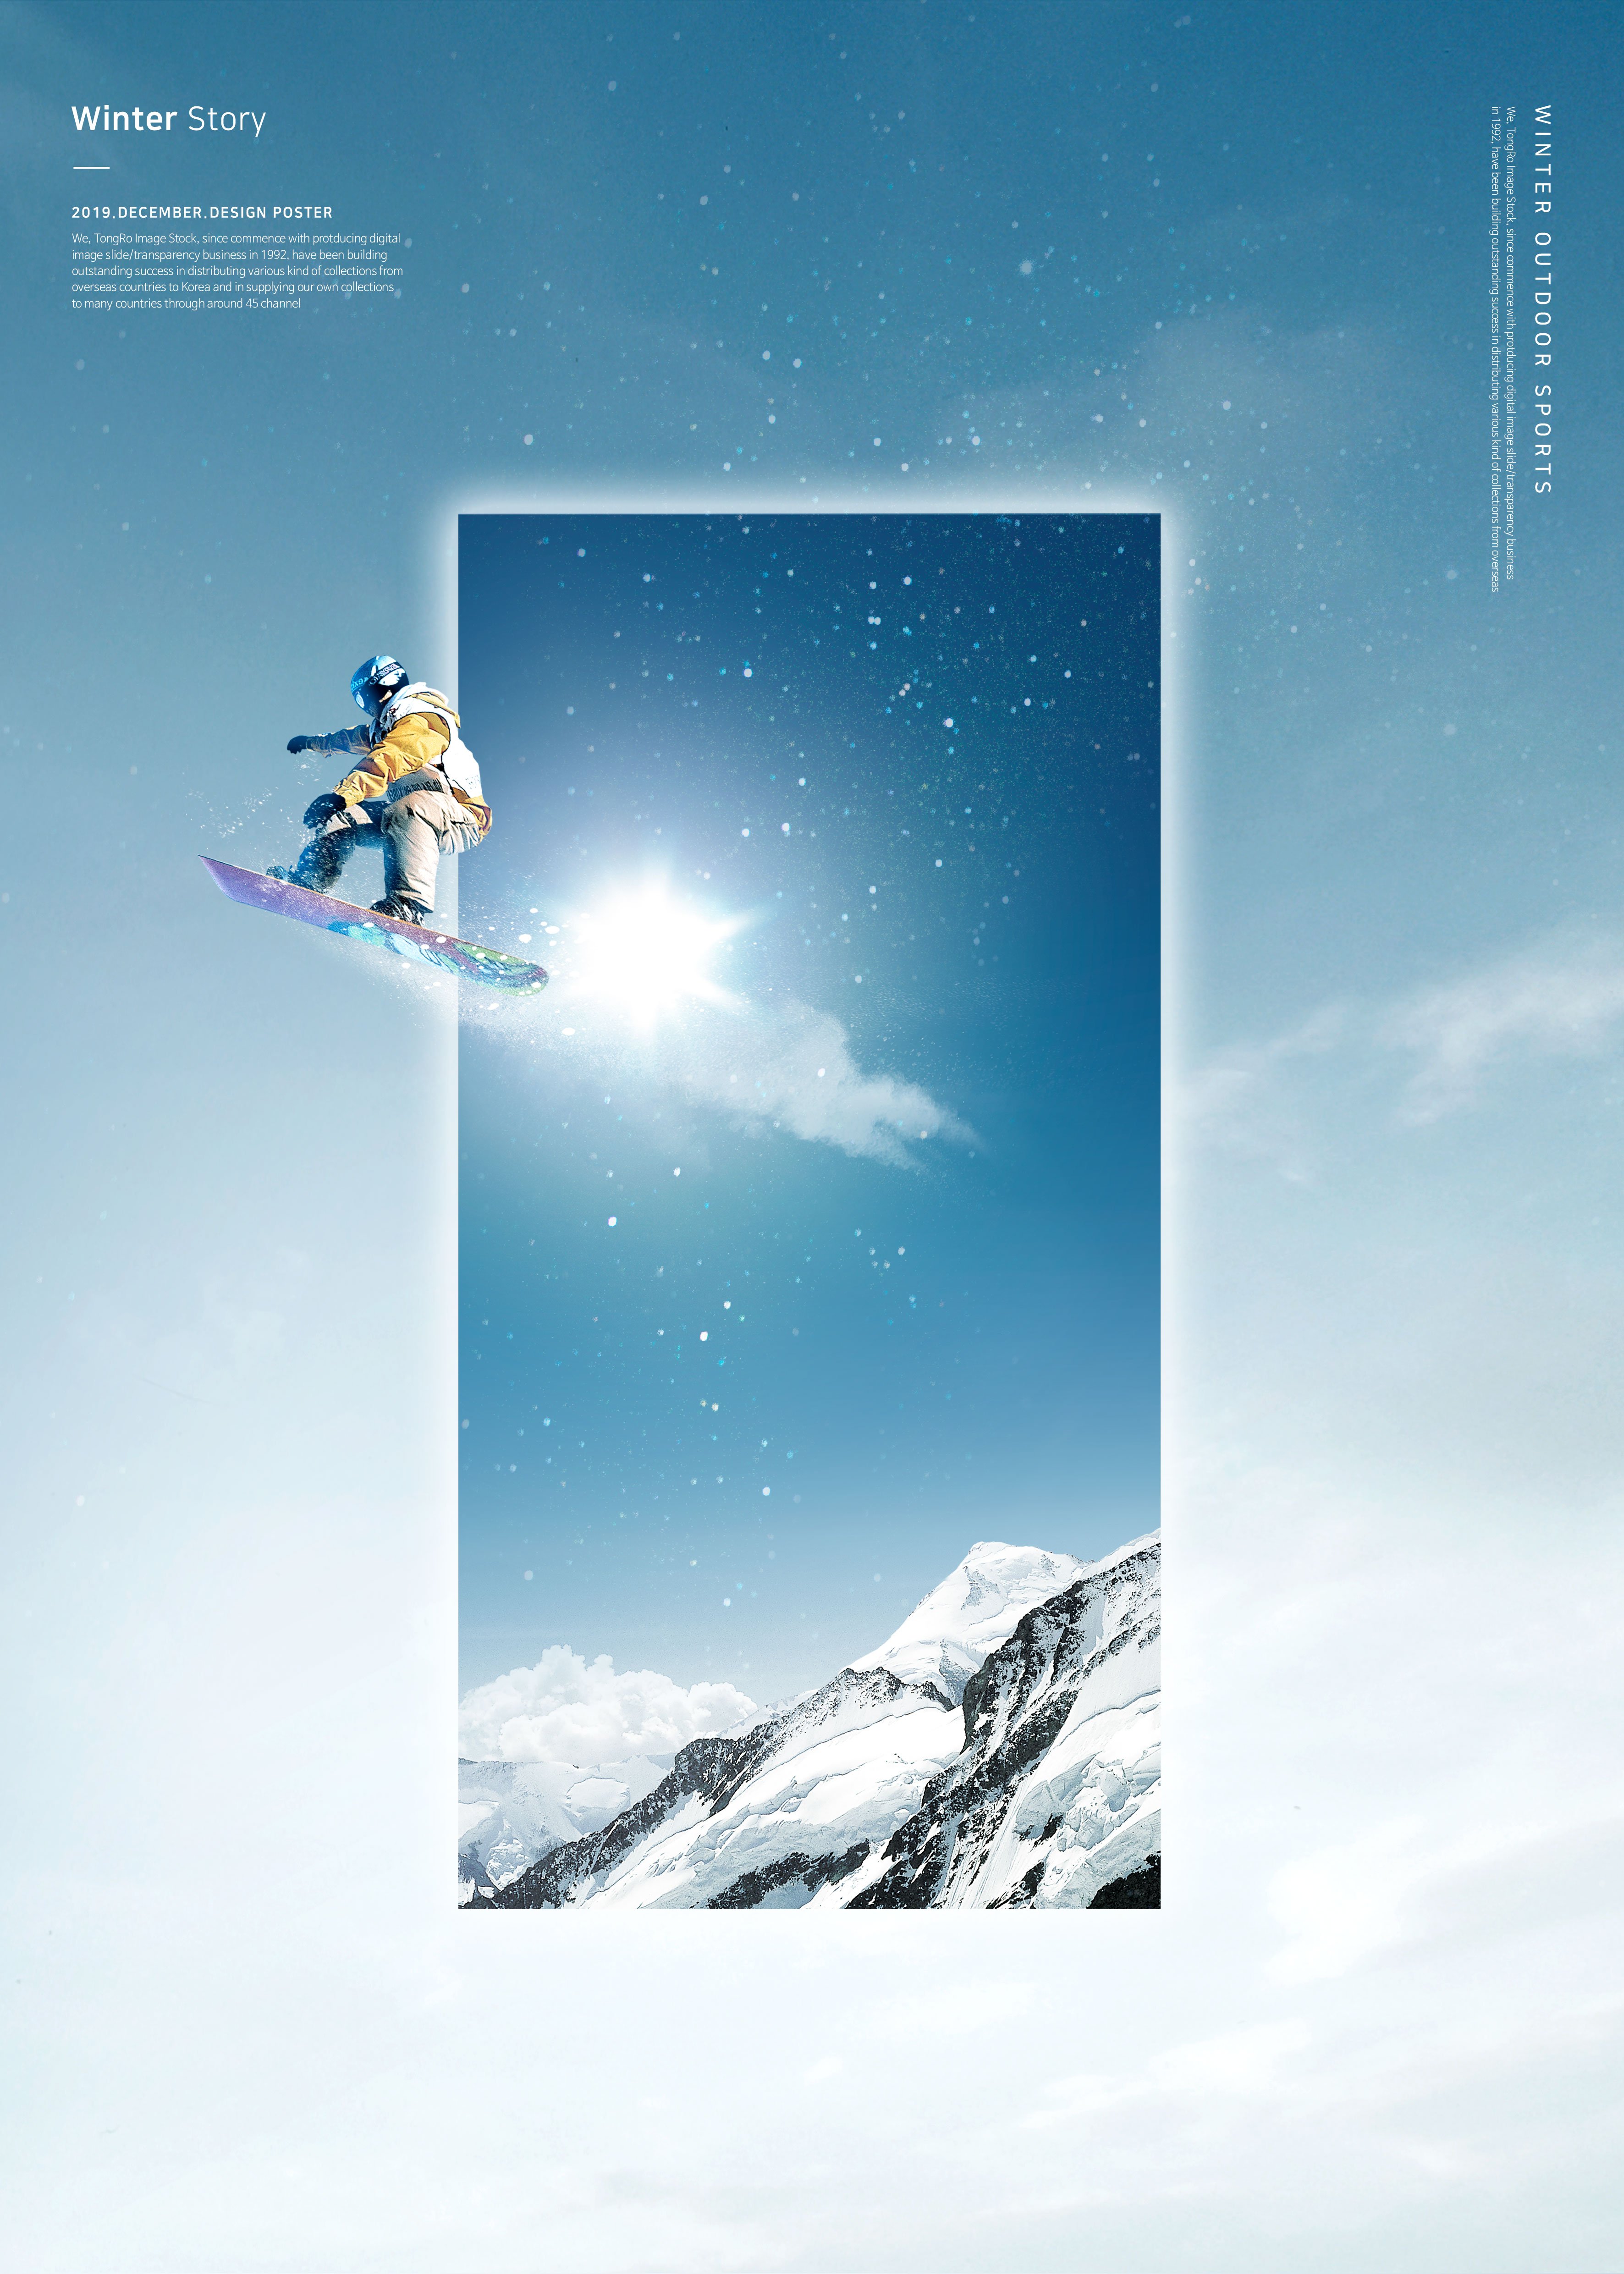 冬季雪山滑雪运动推广海报PSD素材第一素材精选psd模板插图